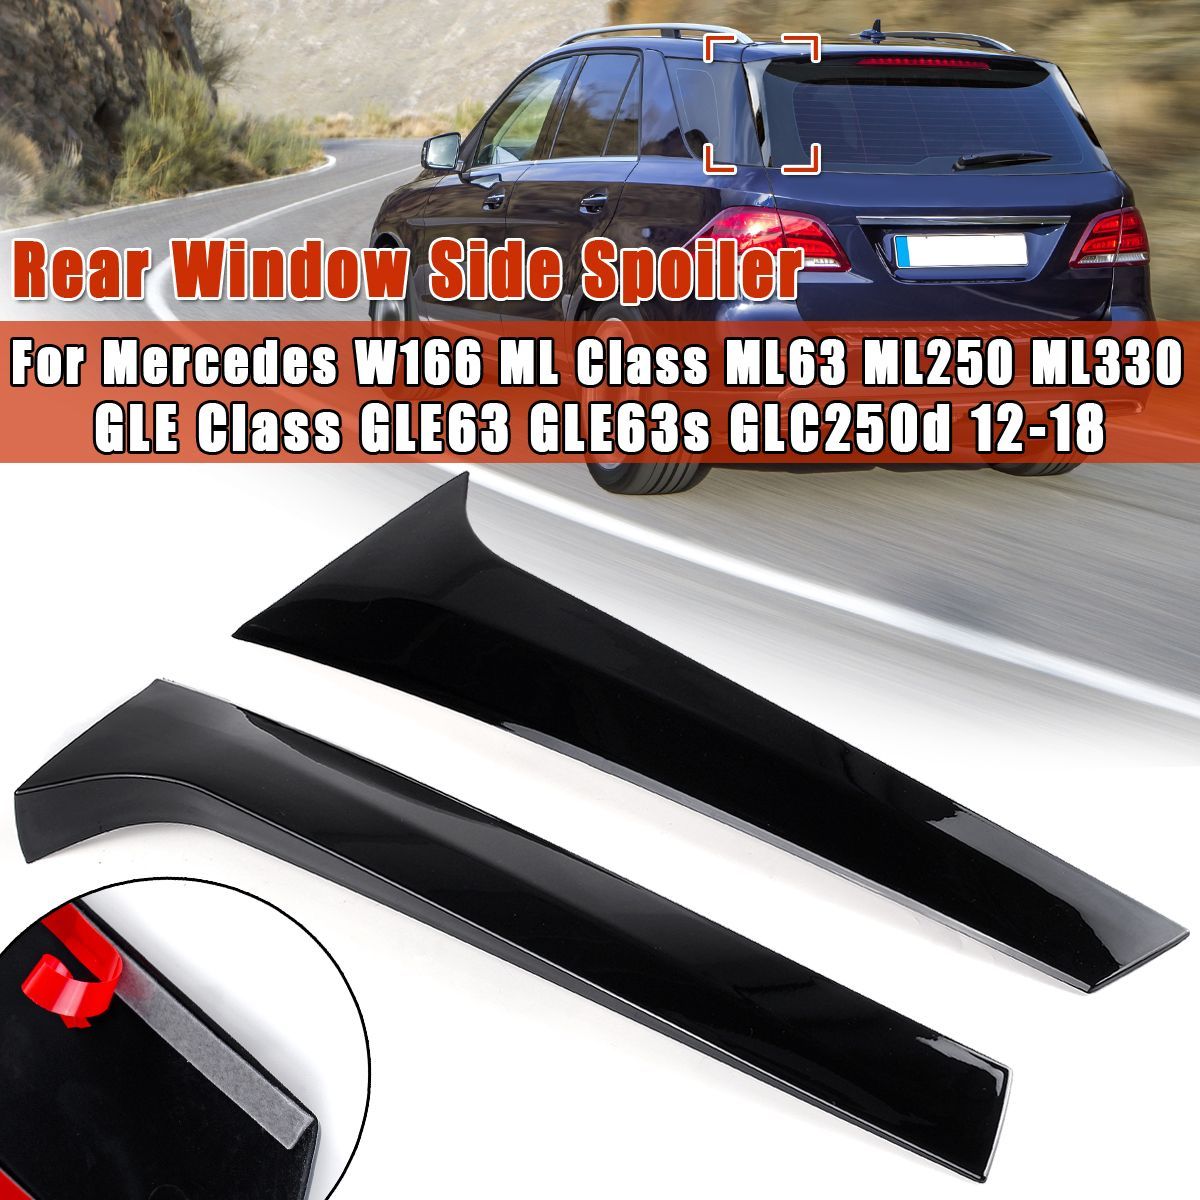 Car-Rear-Window-Side-Spoiler-Canard-Canards-Splitter-For-Mercedes-W166-ML-Class-ML63-ML250-ML330-GLE-1679242